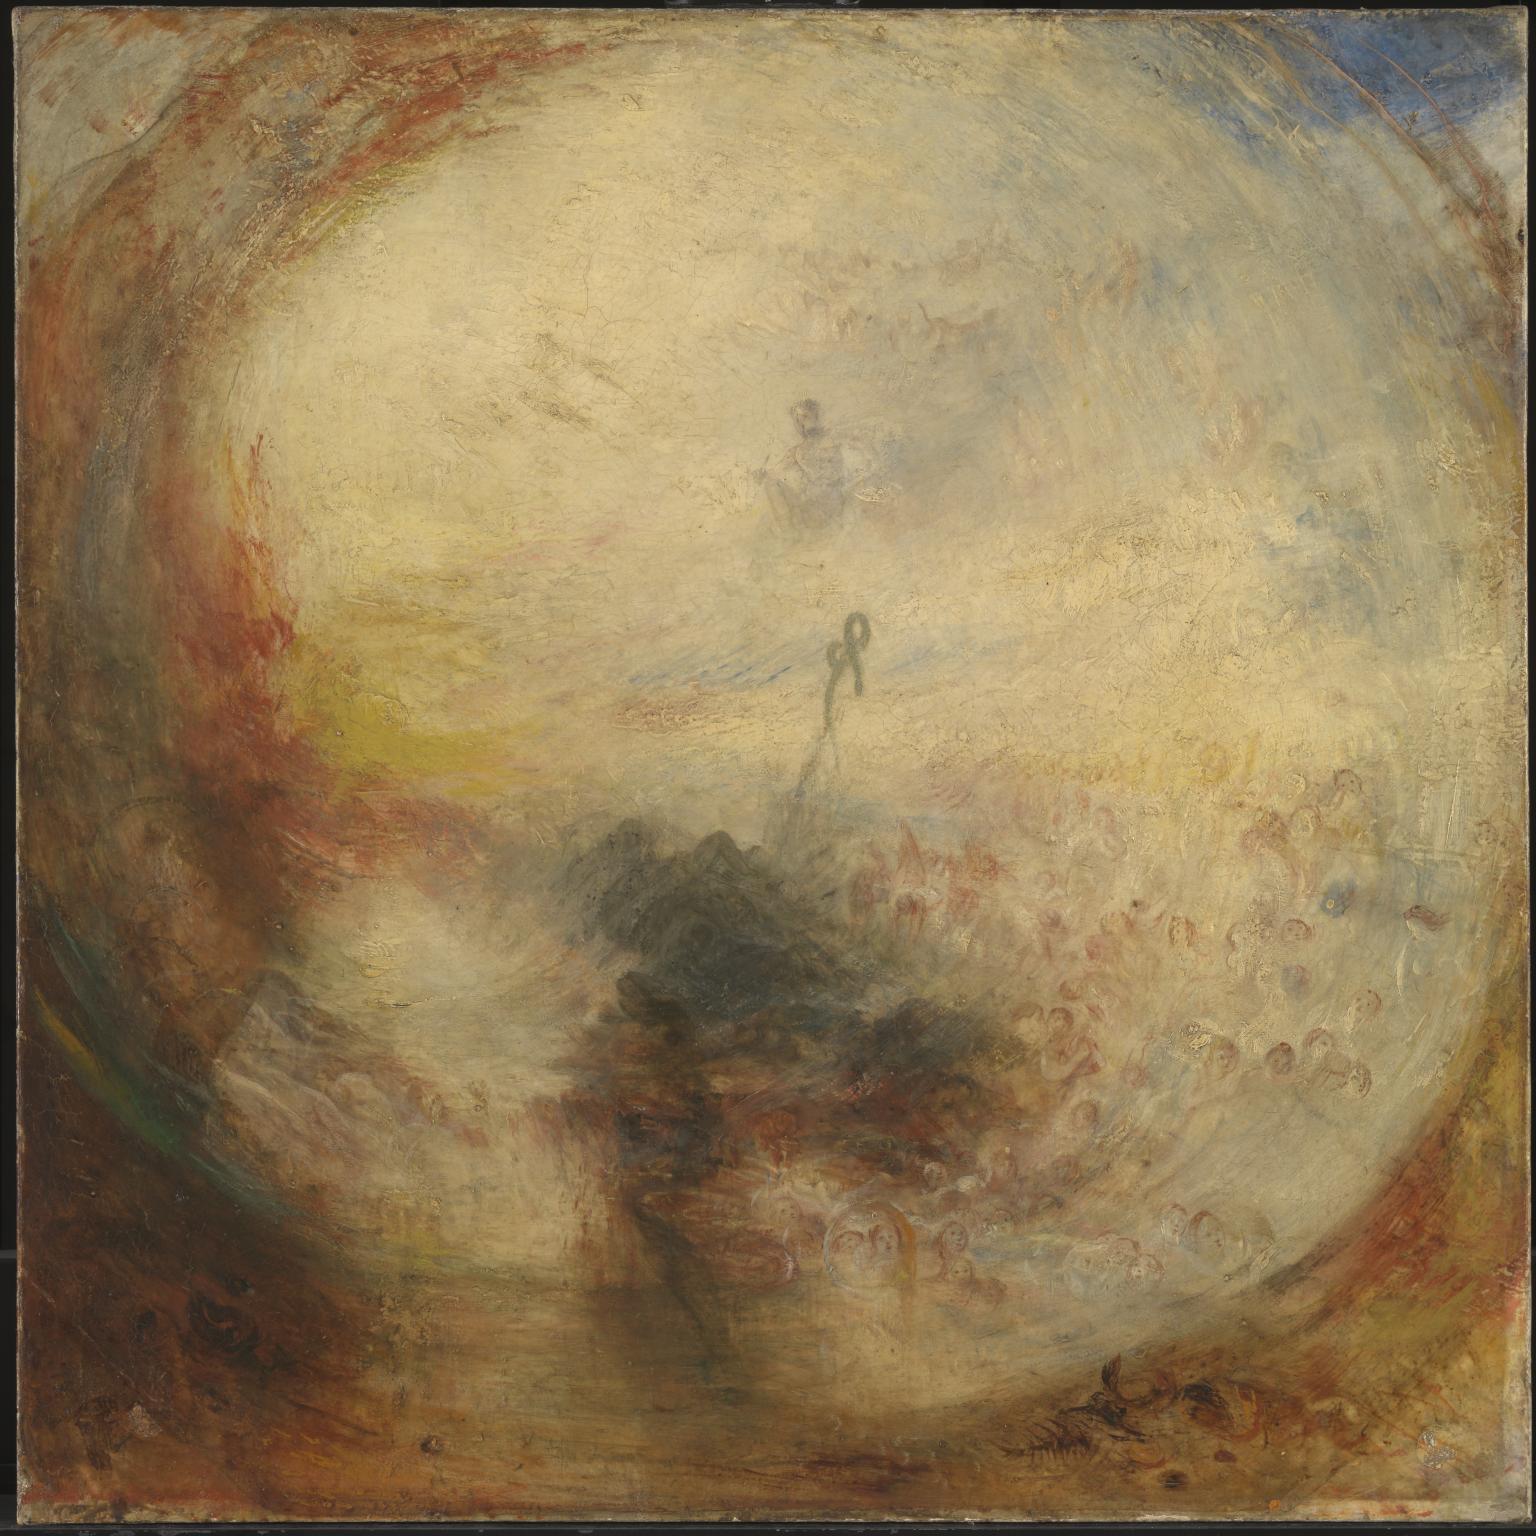 光與彩 by Joseph Mallord William Turner - 1843 - 787 x 787 cm 